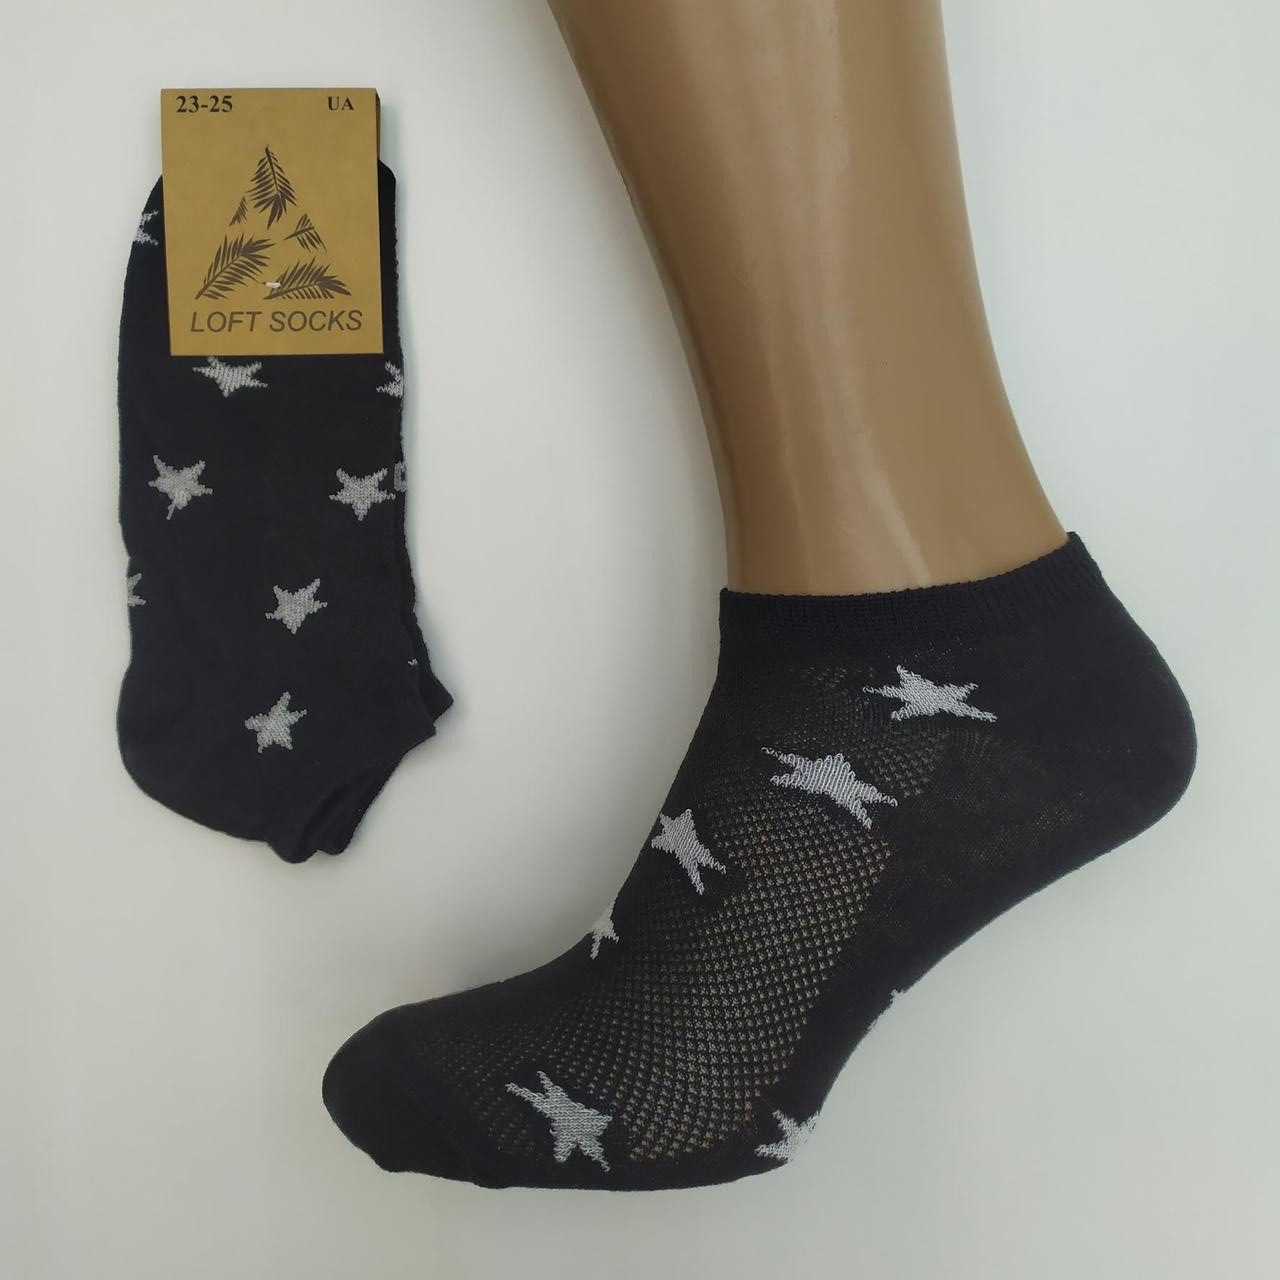 Шкарпетки жіночі літні з сіткою "Зірочки", LOFT SOCKS, р. 23-25, чорні, 20016869